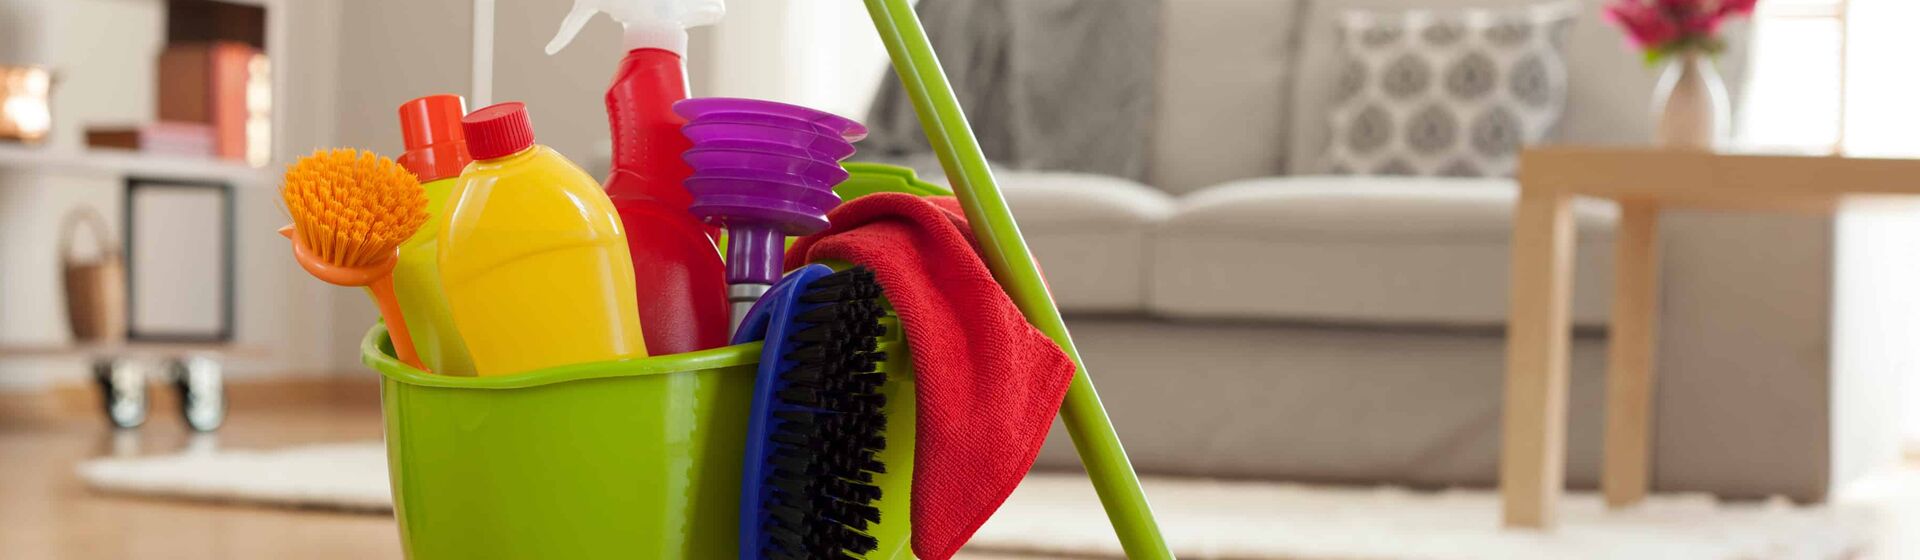 Как научиться поддерживать чистоту в доме и все успевать?